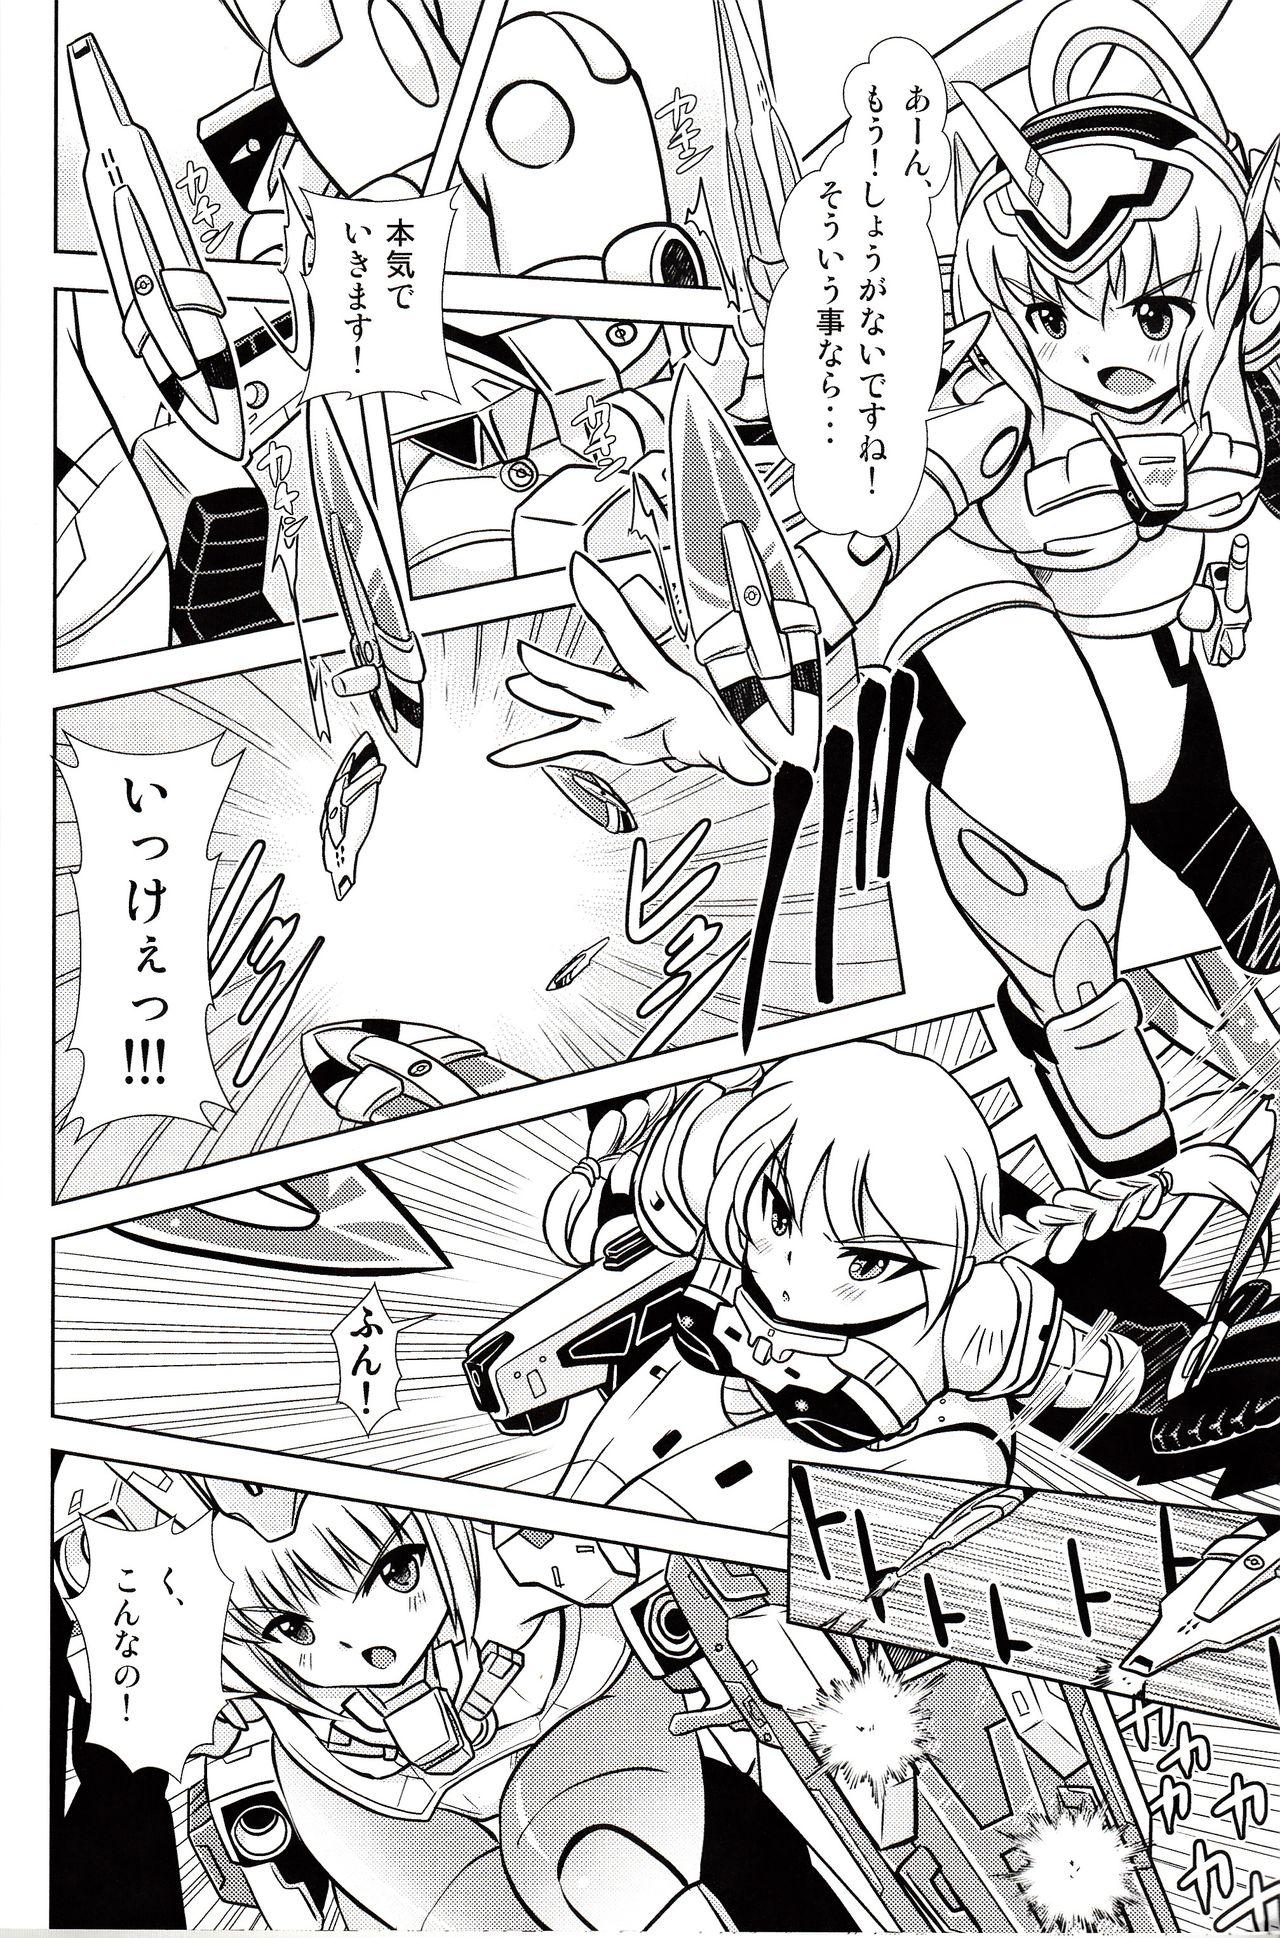 Maid BA&M - Busou shinki Frame arms girl Cheating - Page 11